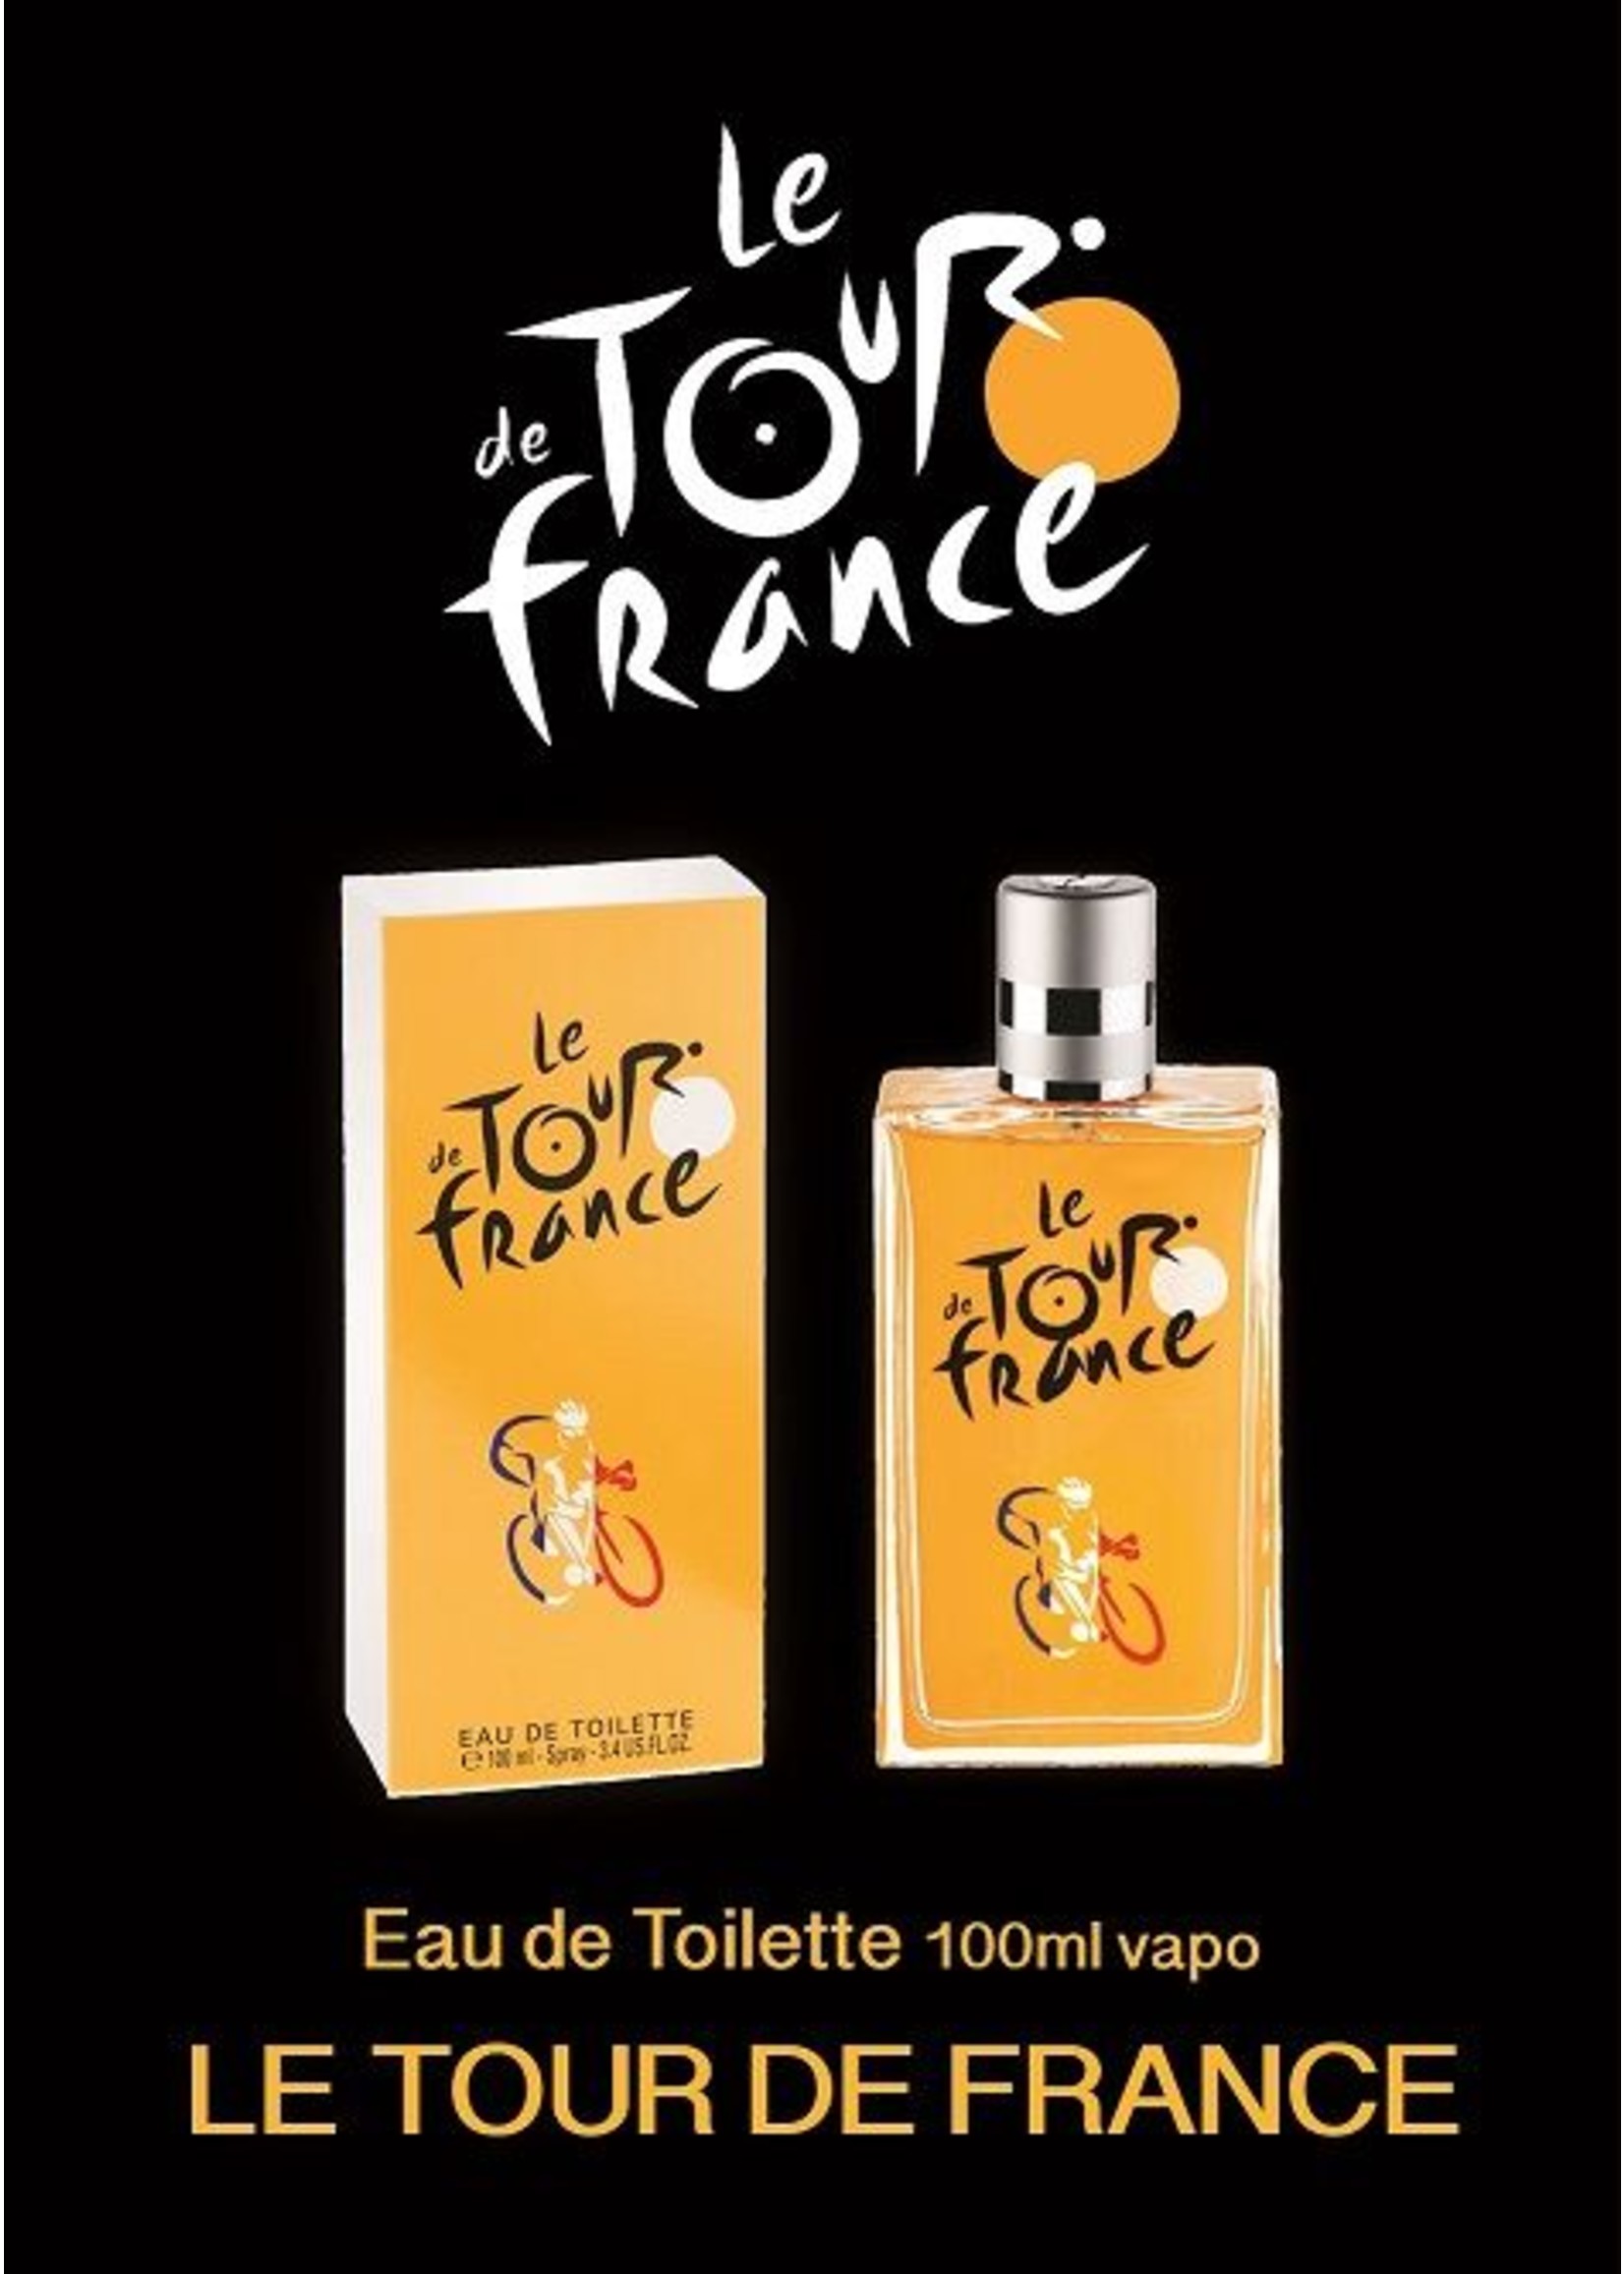 Le Tour de France Le Tour De France Original - Eau De Toilette for women and men